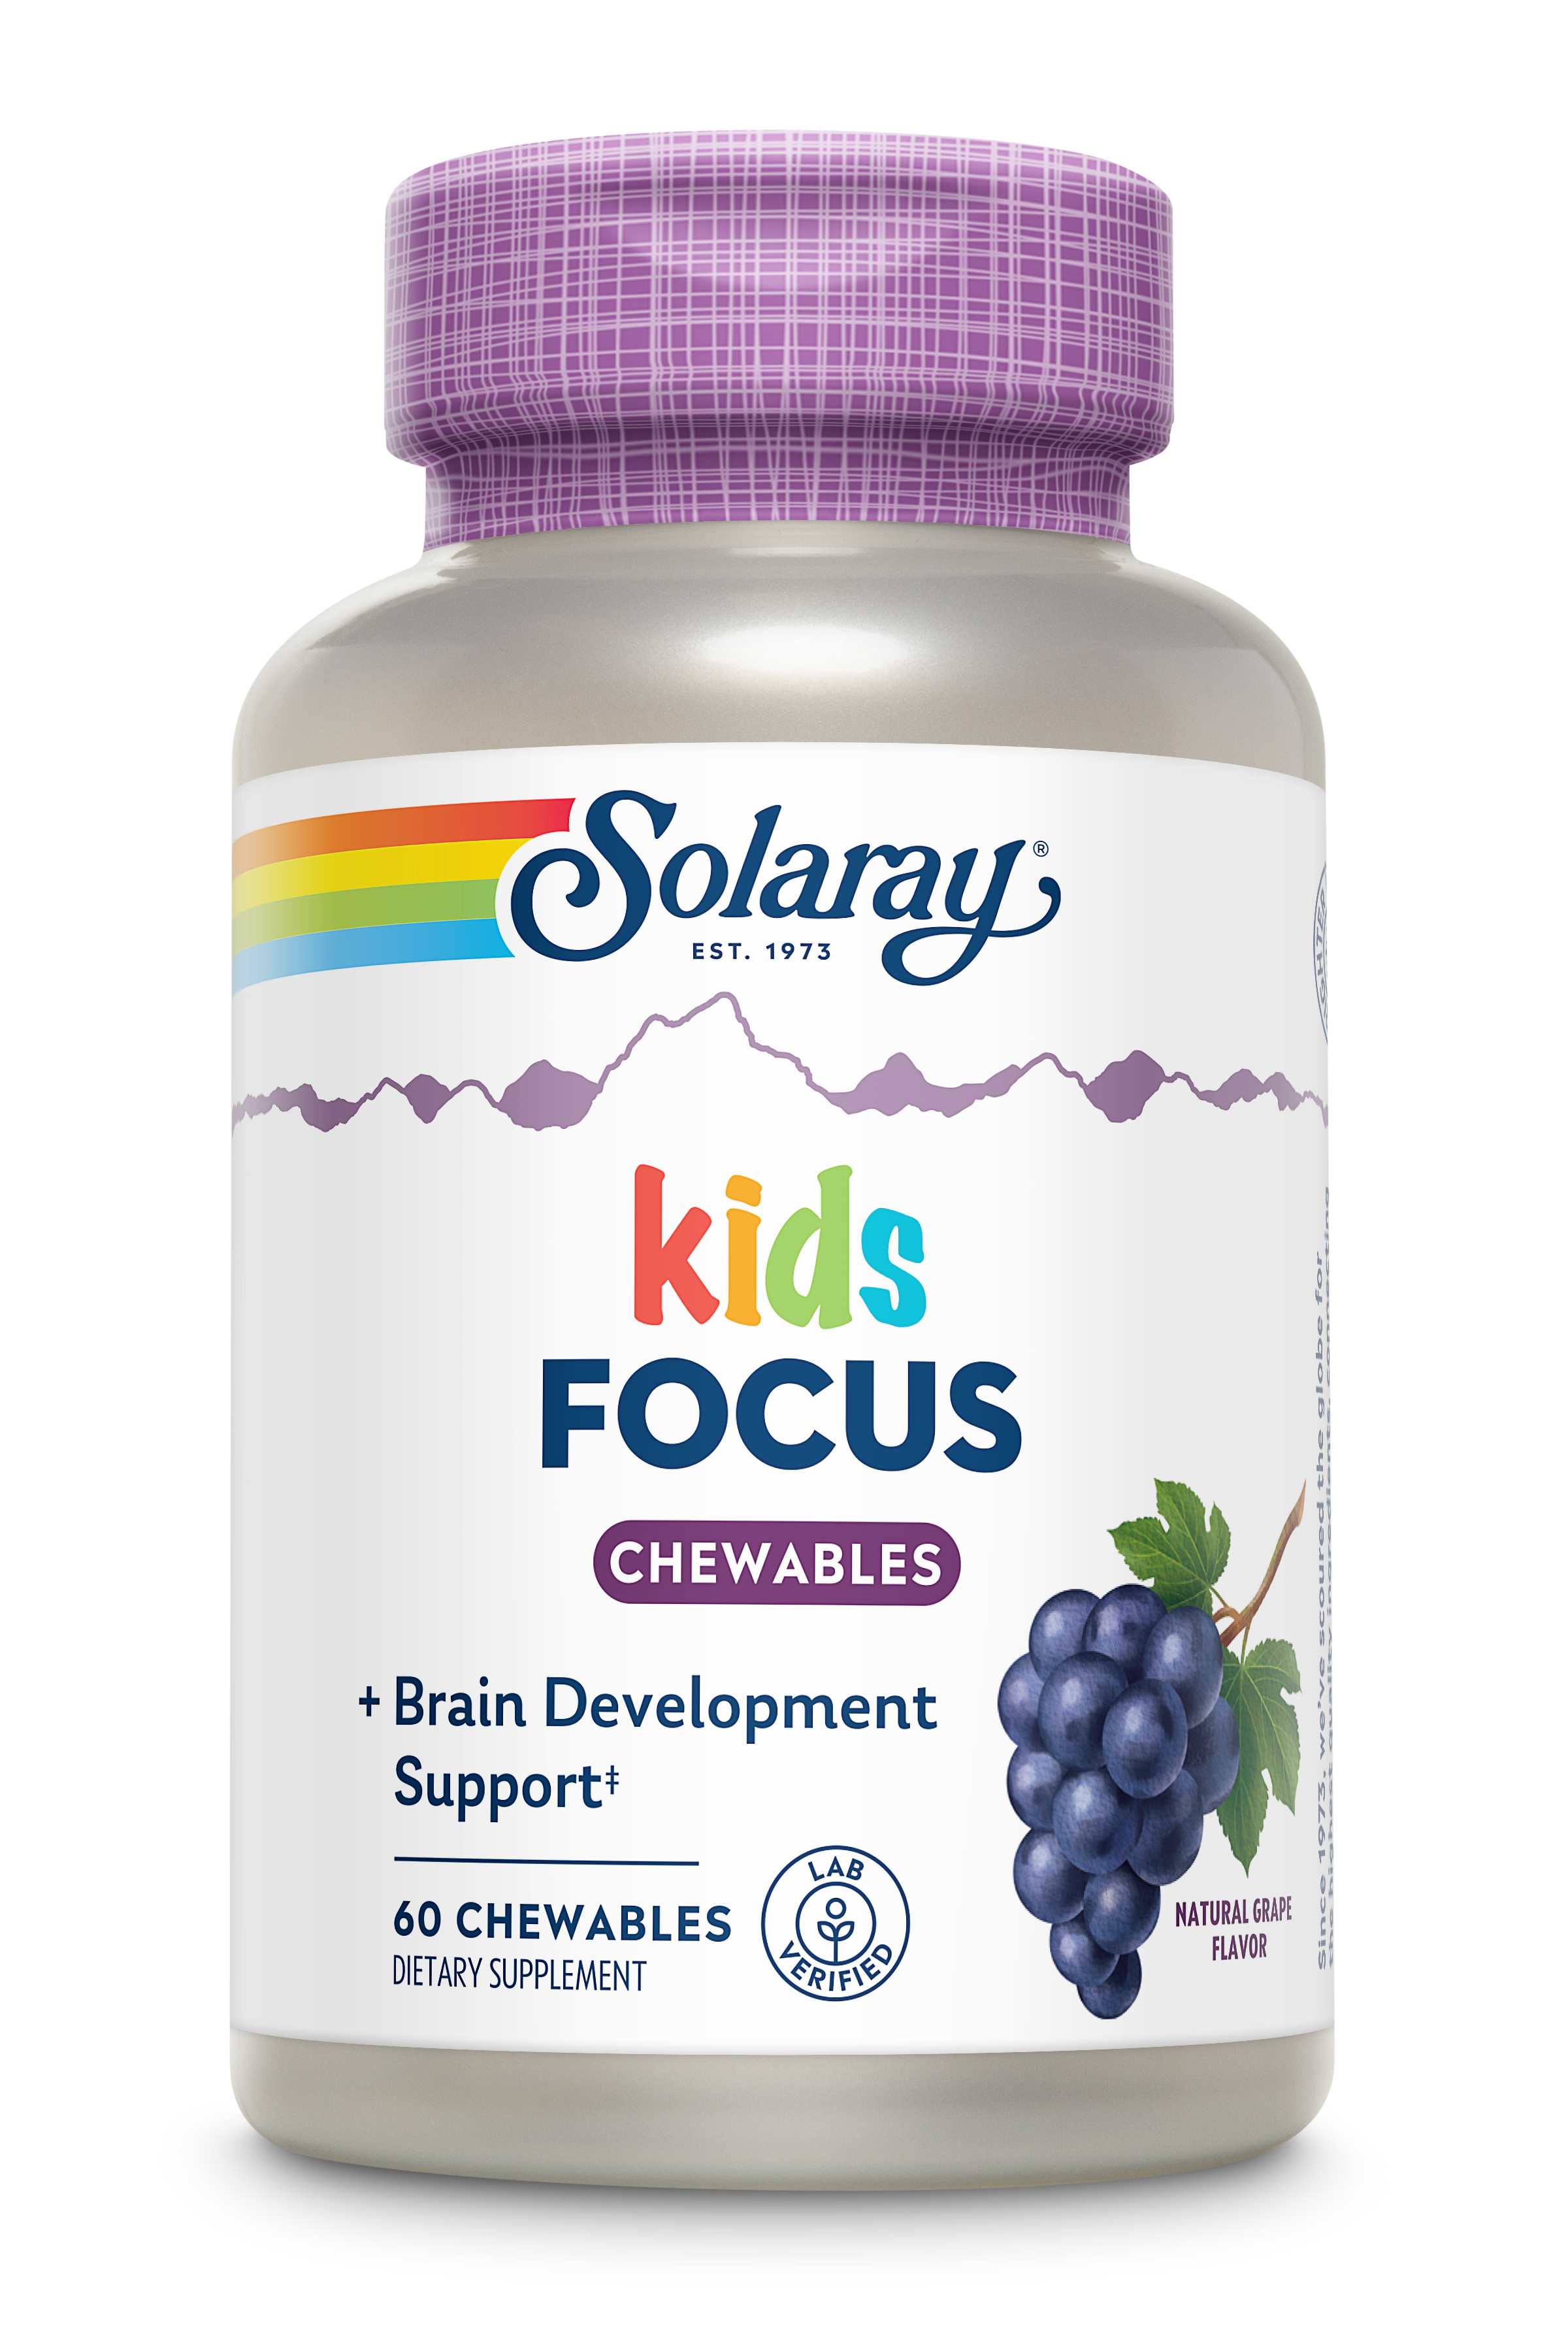 Child focus. Solaray Kids Vitamins Minerals Chewable 60. Solaray Focus для детей купить. Sun Focus for Kids купить. Витамины Focus Kids купить в Москве в аптеке.